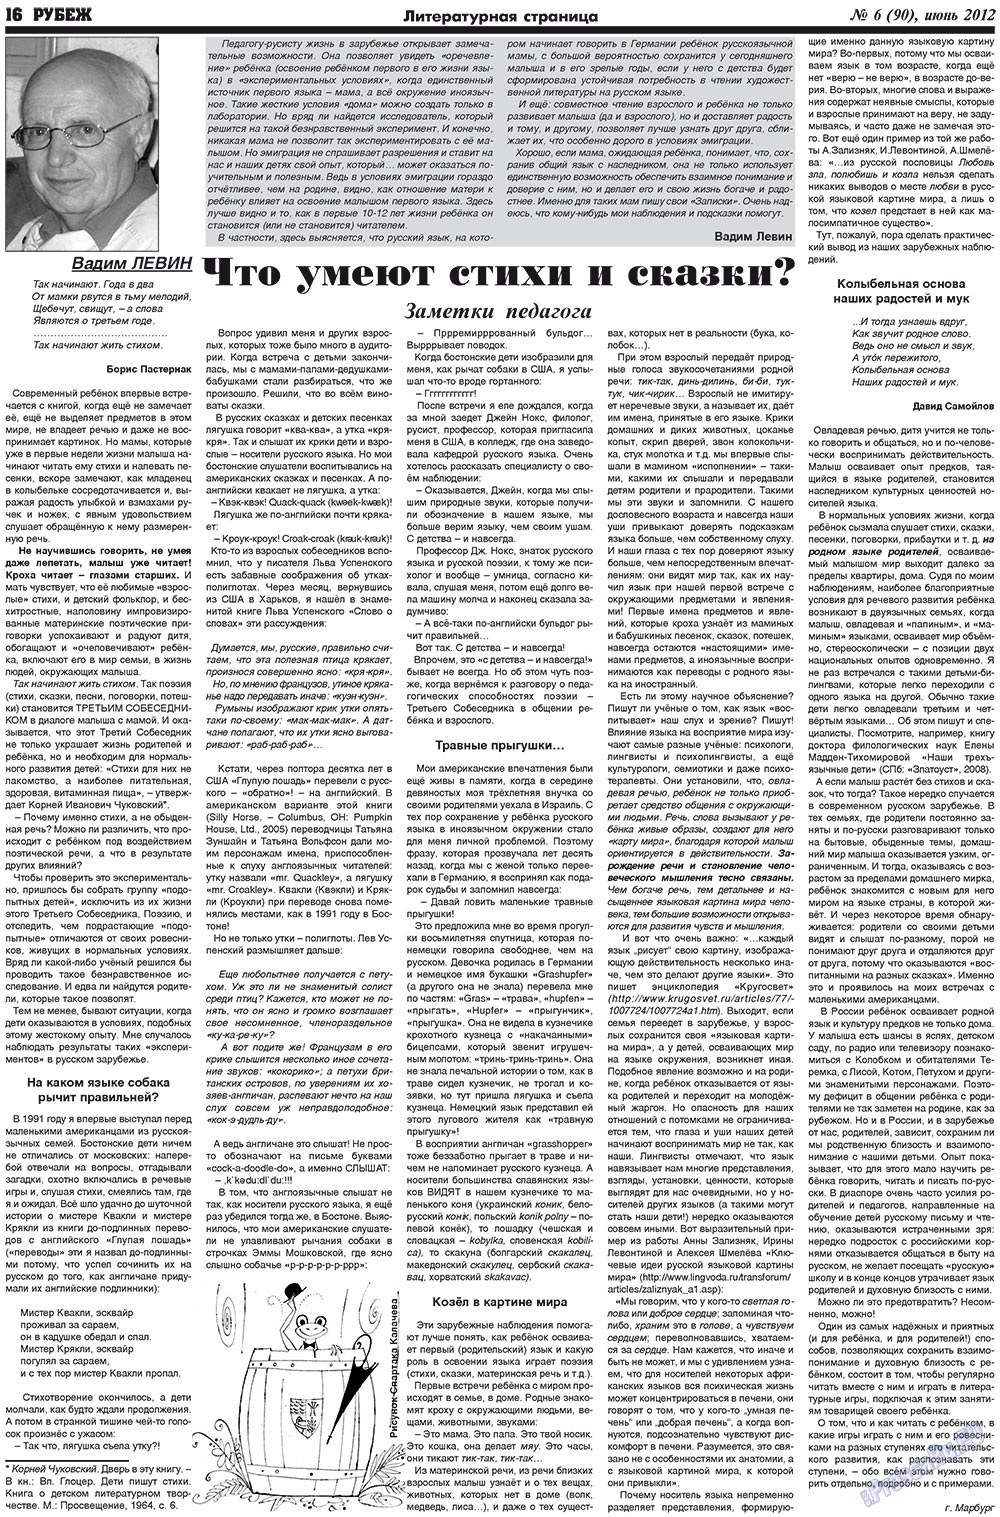 Рубеж (газета). 2012 год, номер 6, стр. 16